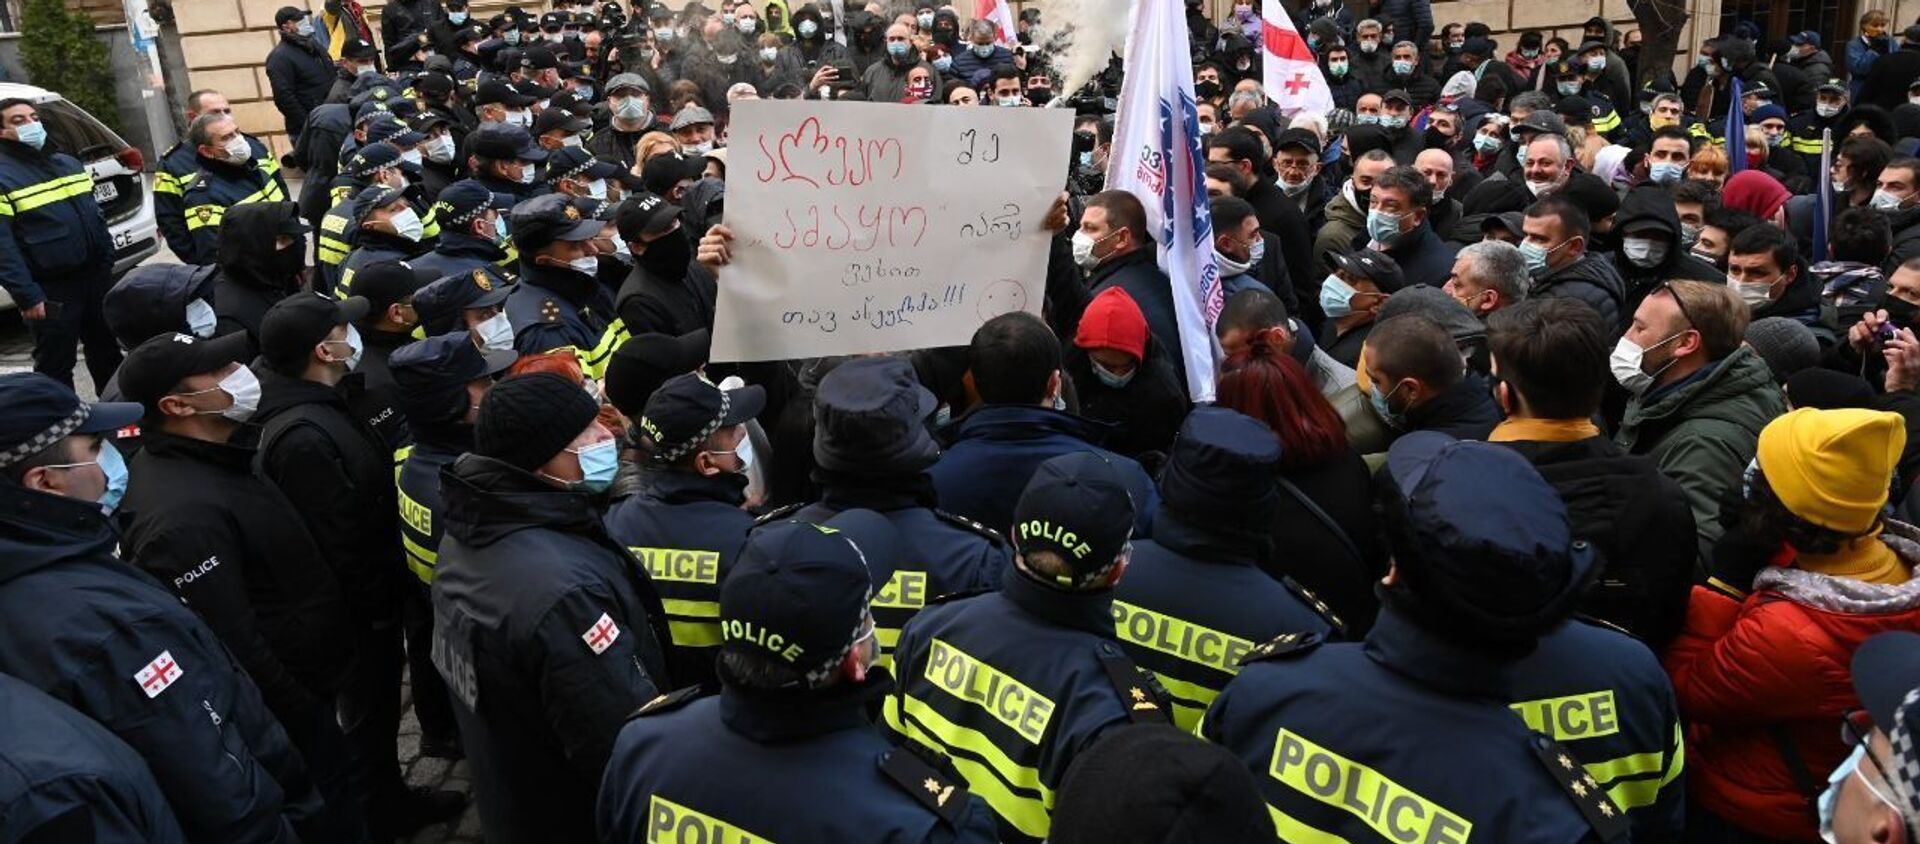 Пикет оппозиции и полицейский кордон у здания парламента Грузии 2 марта 2021 года - Sputnik Грузия, 1920, 02.03.2021